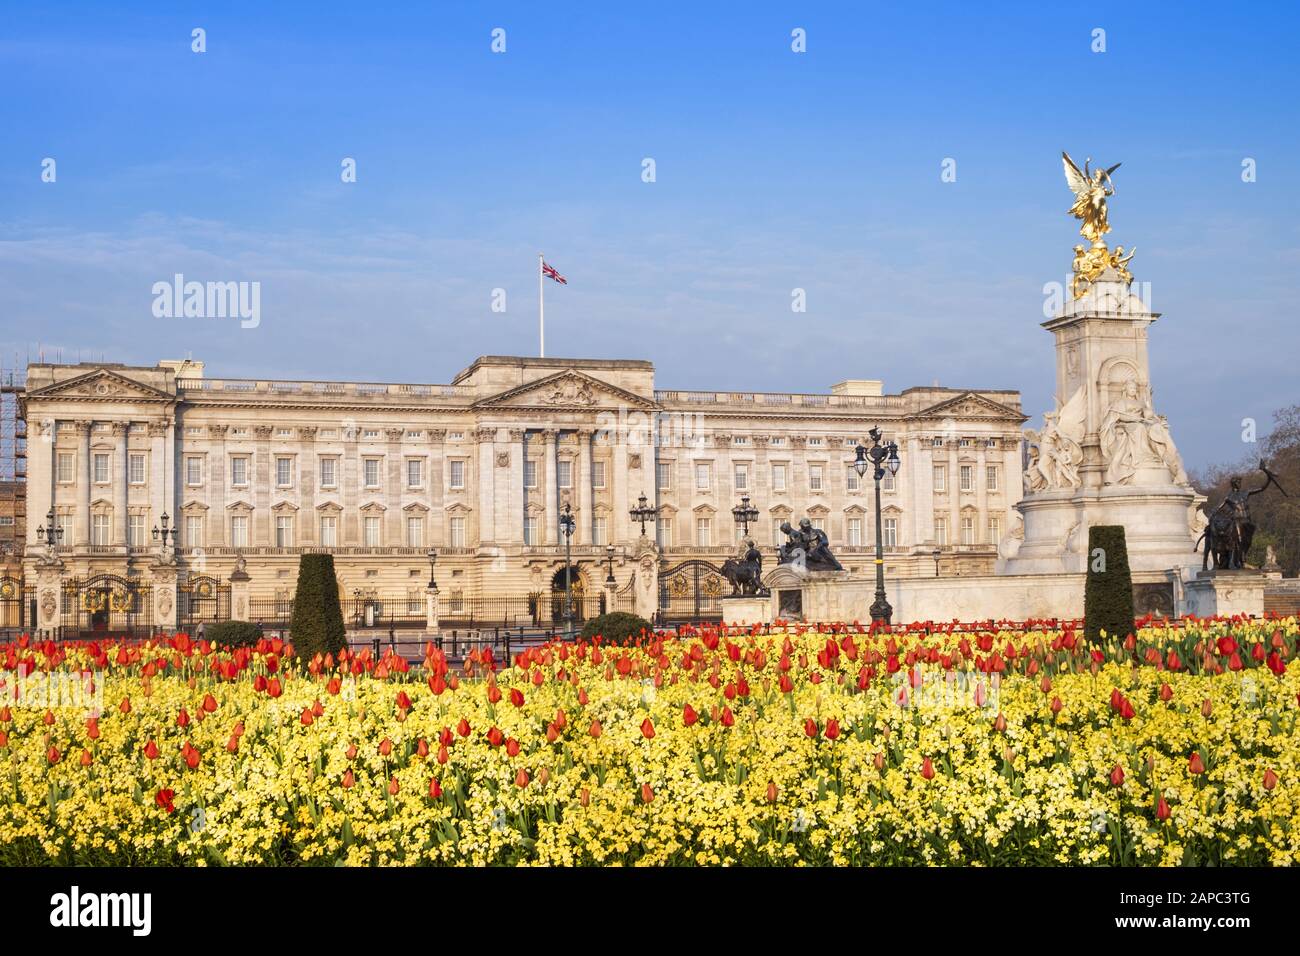 La façade du palais de Buckingham, résidence officielle de la reine d'Angleterre, Westminster, Londres Banque D'Images